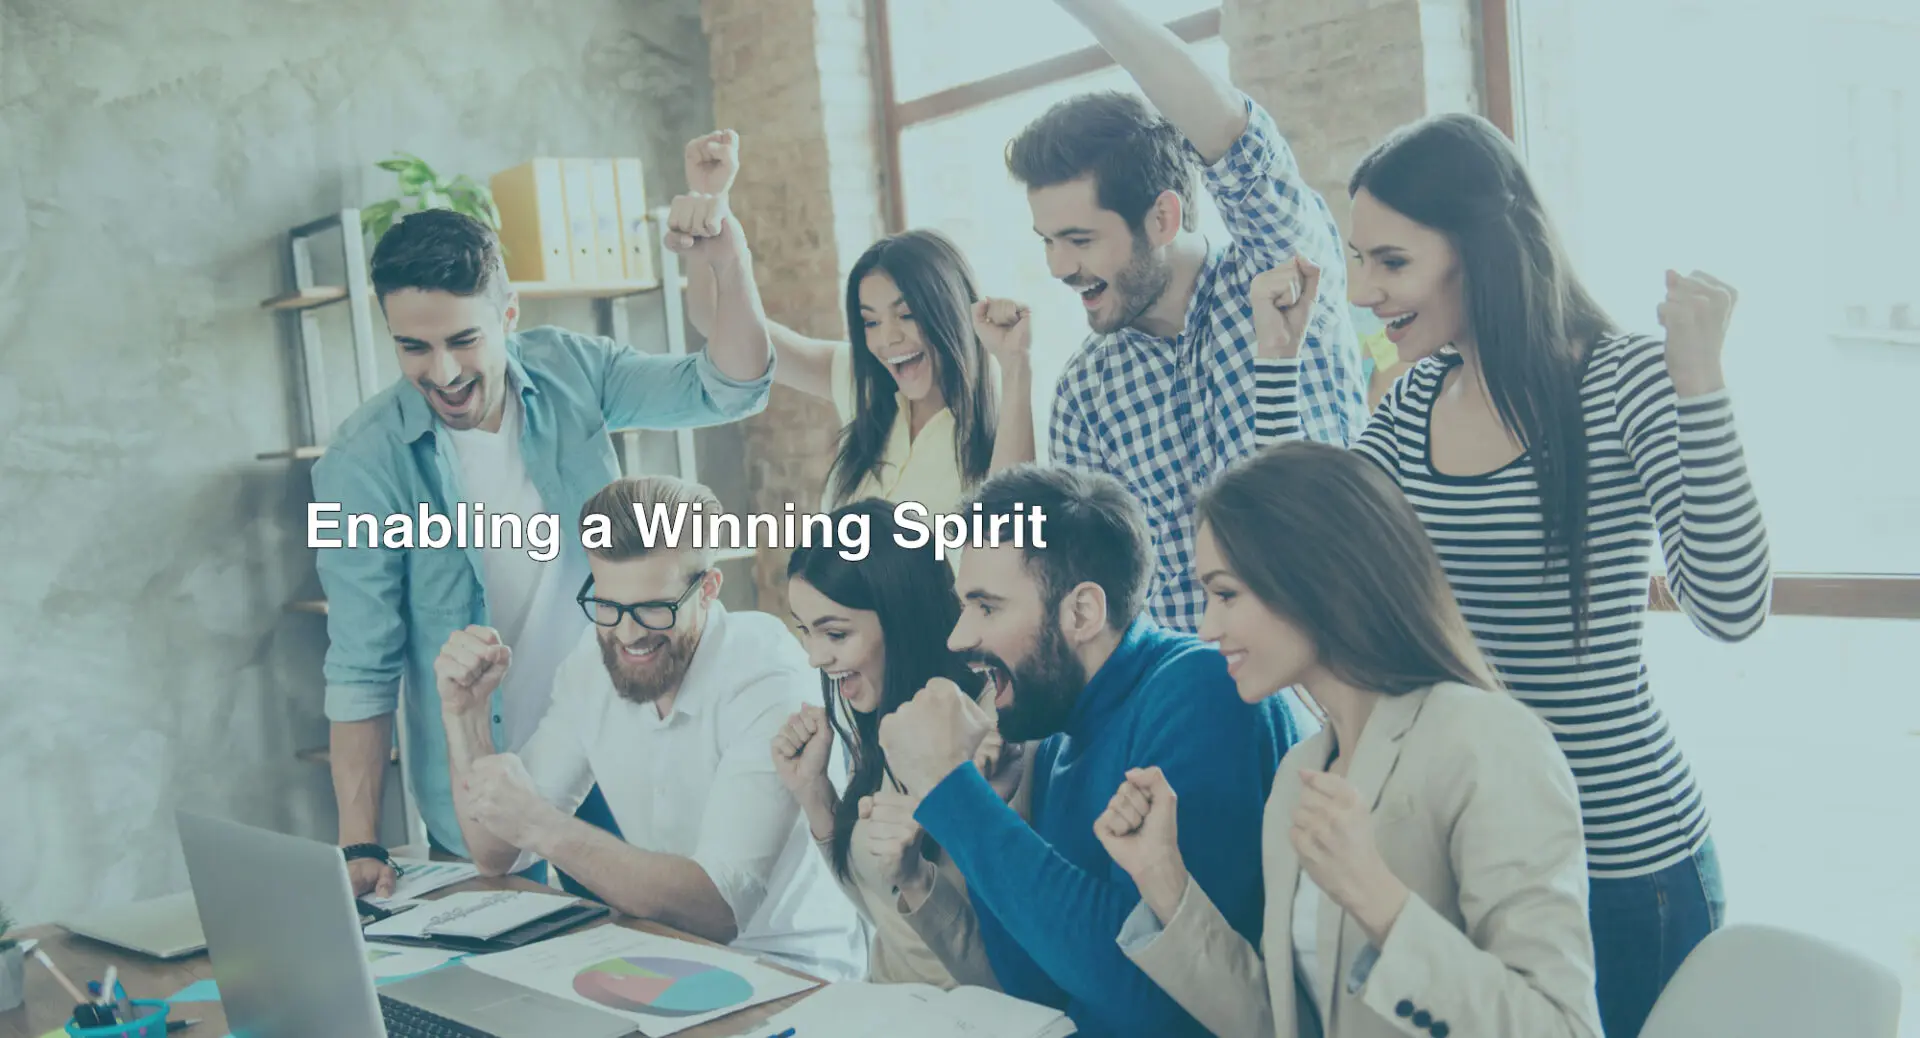 Enabling a winning spirit text on a digital poster